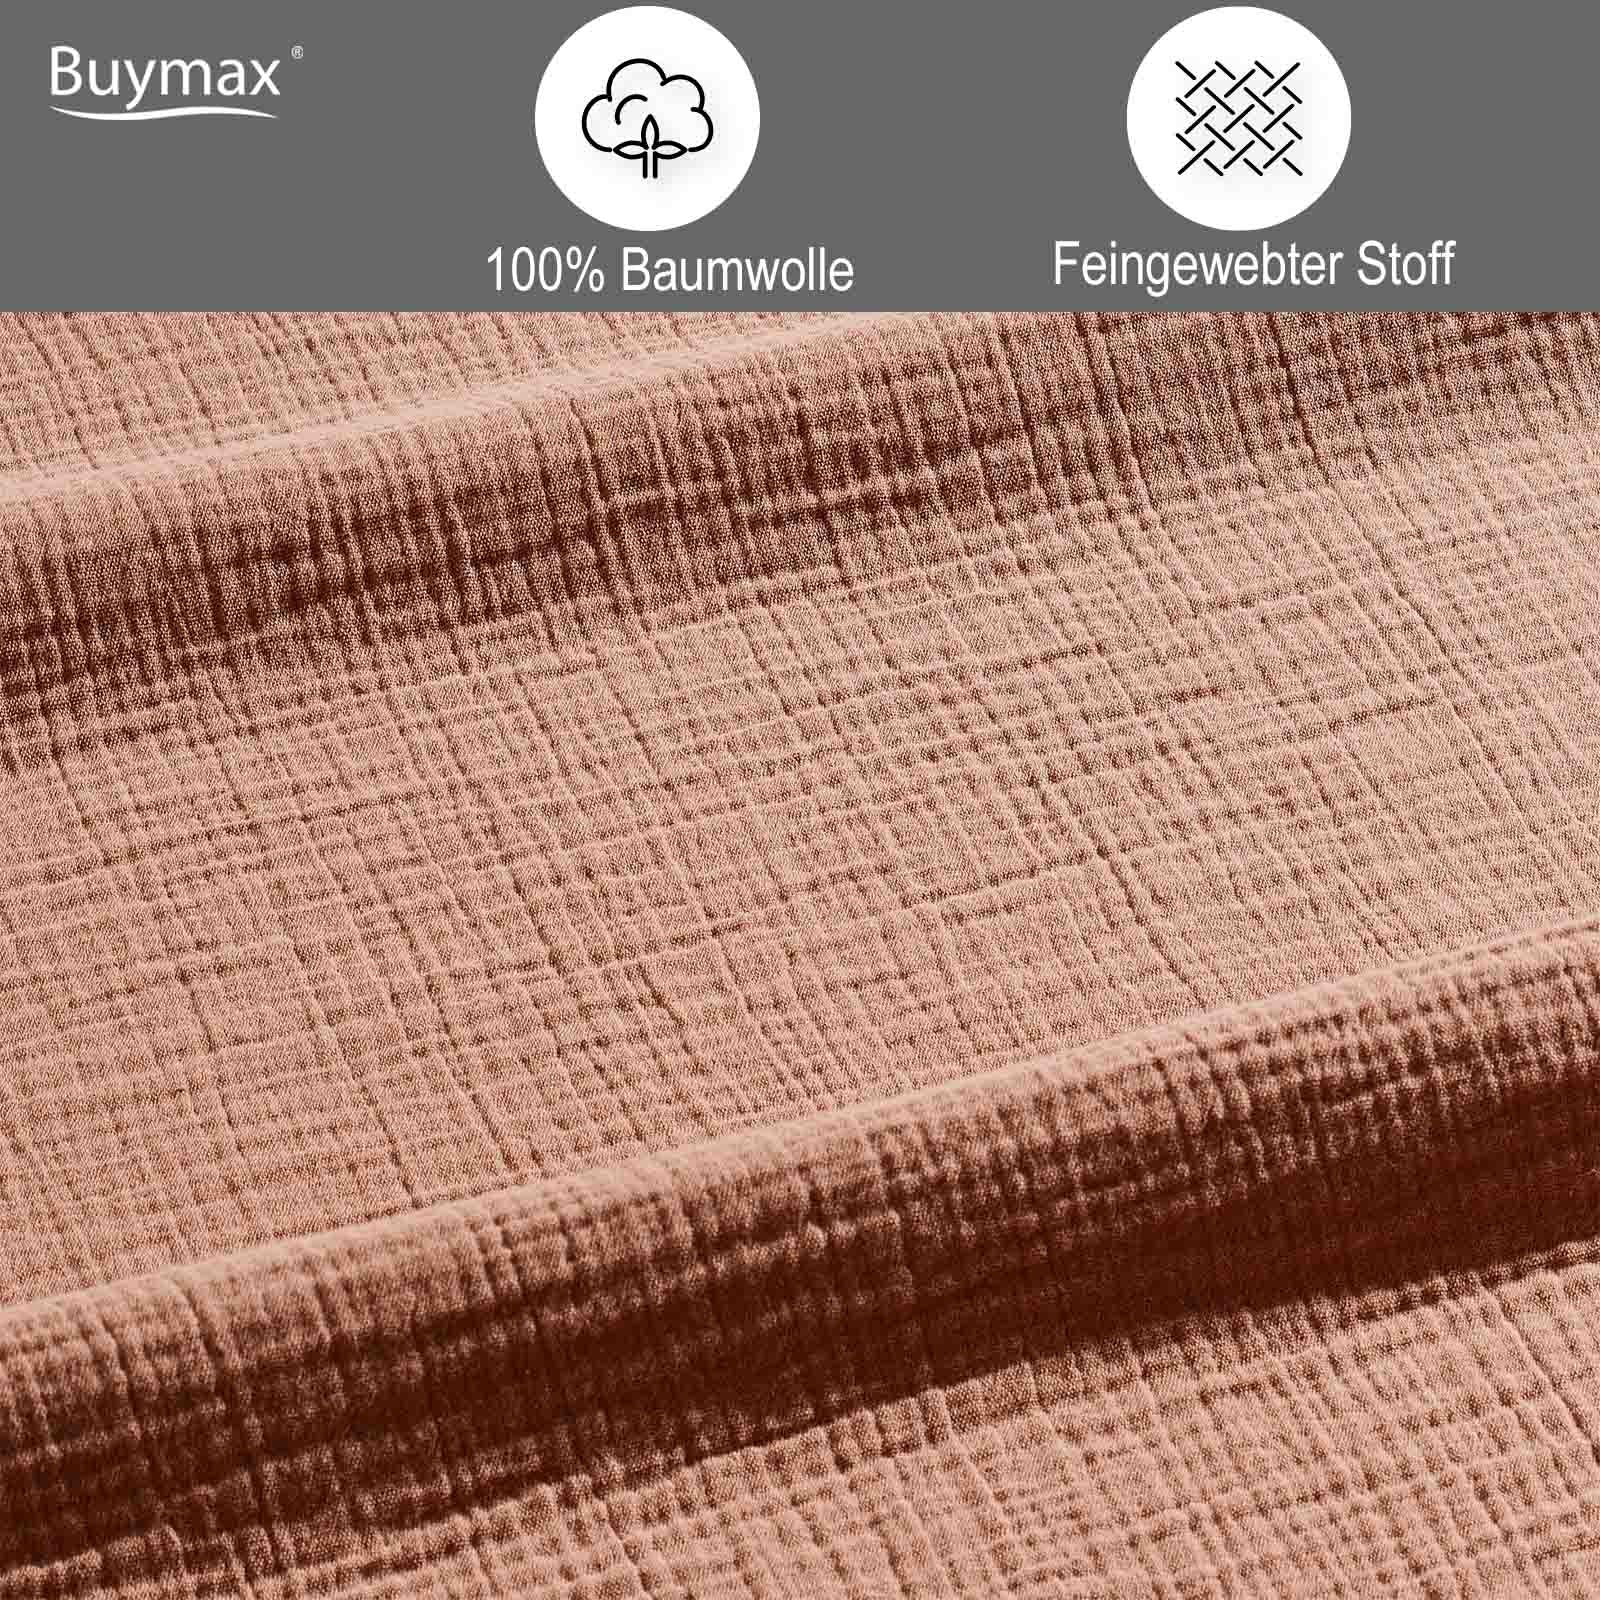 Buymax® Musselin Bettwäsche Set aus Baumwolle, Beige, 200x200 cm